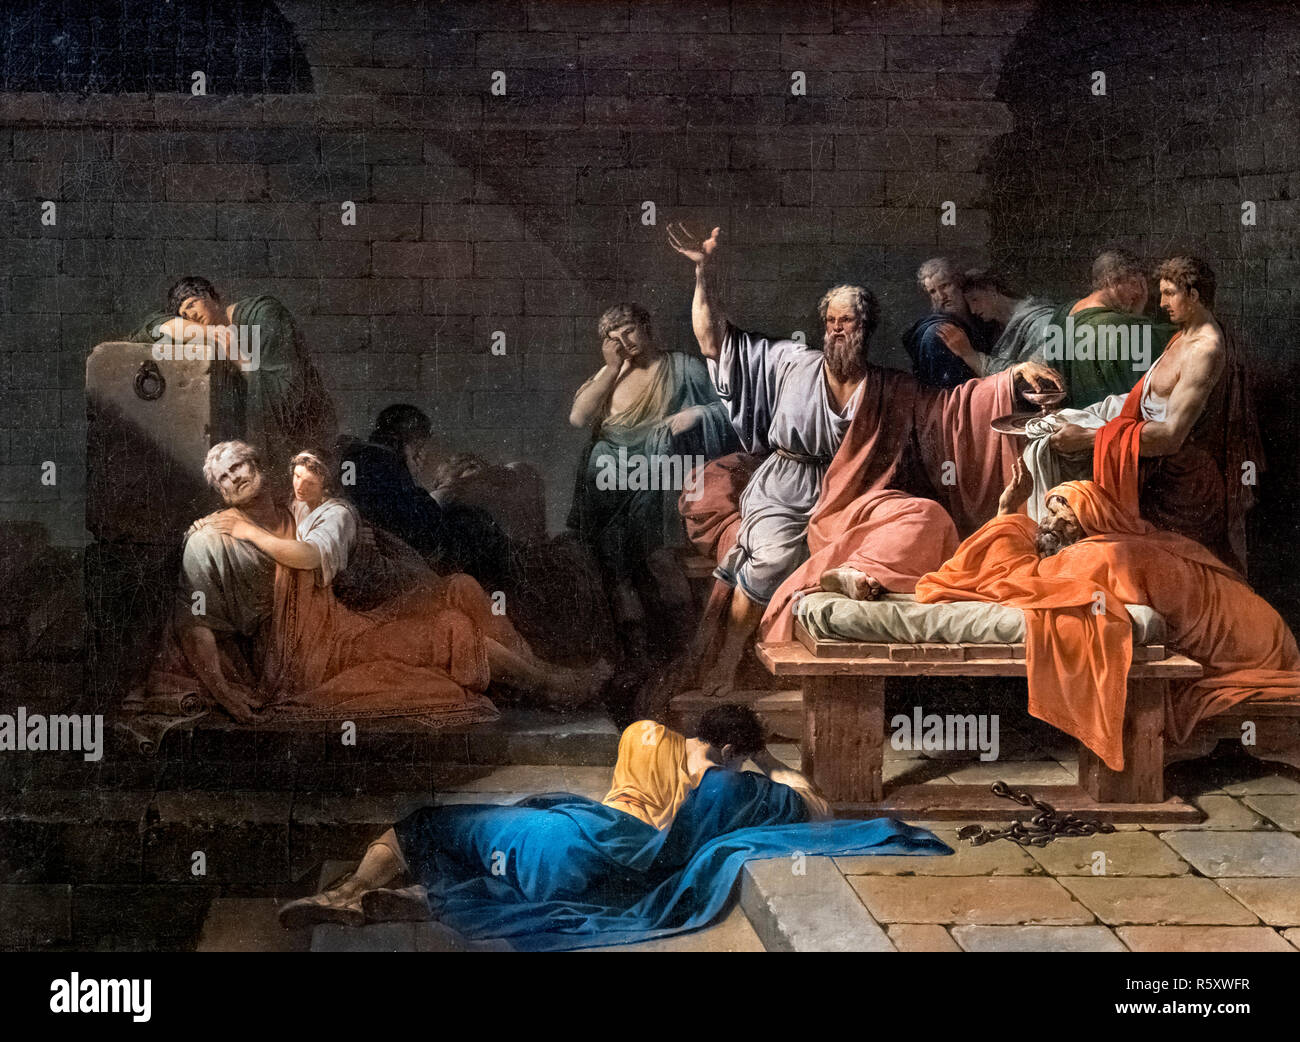 La mort de Socrate par Jean-François Pierre Peyron (1744-1814), huile sur toile, 1786/7 Banque D'Images